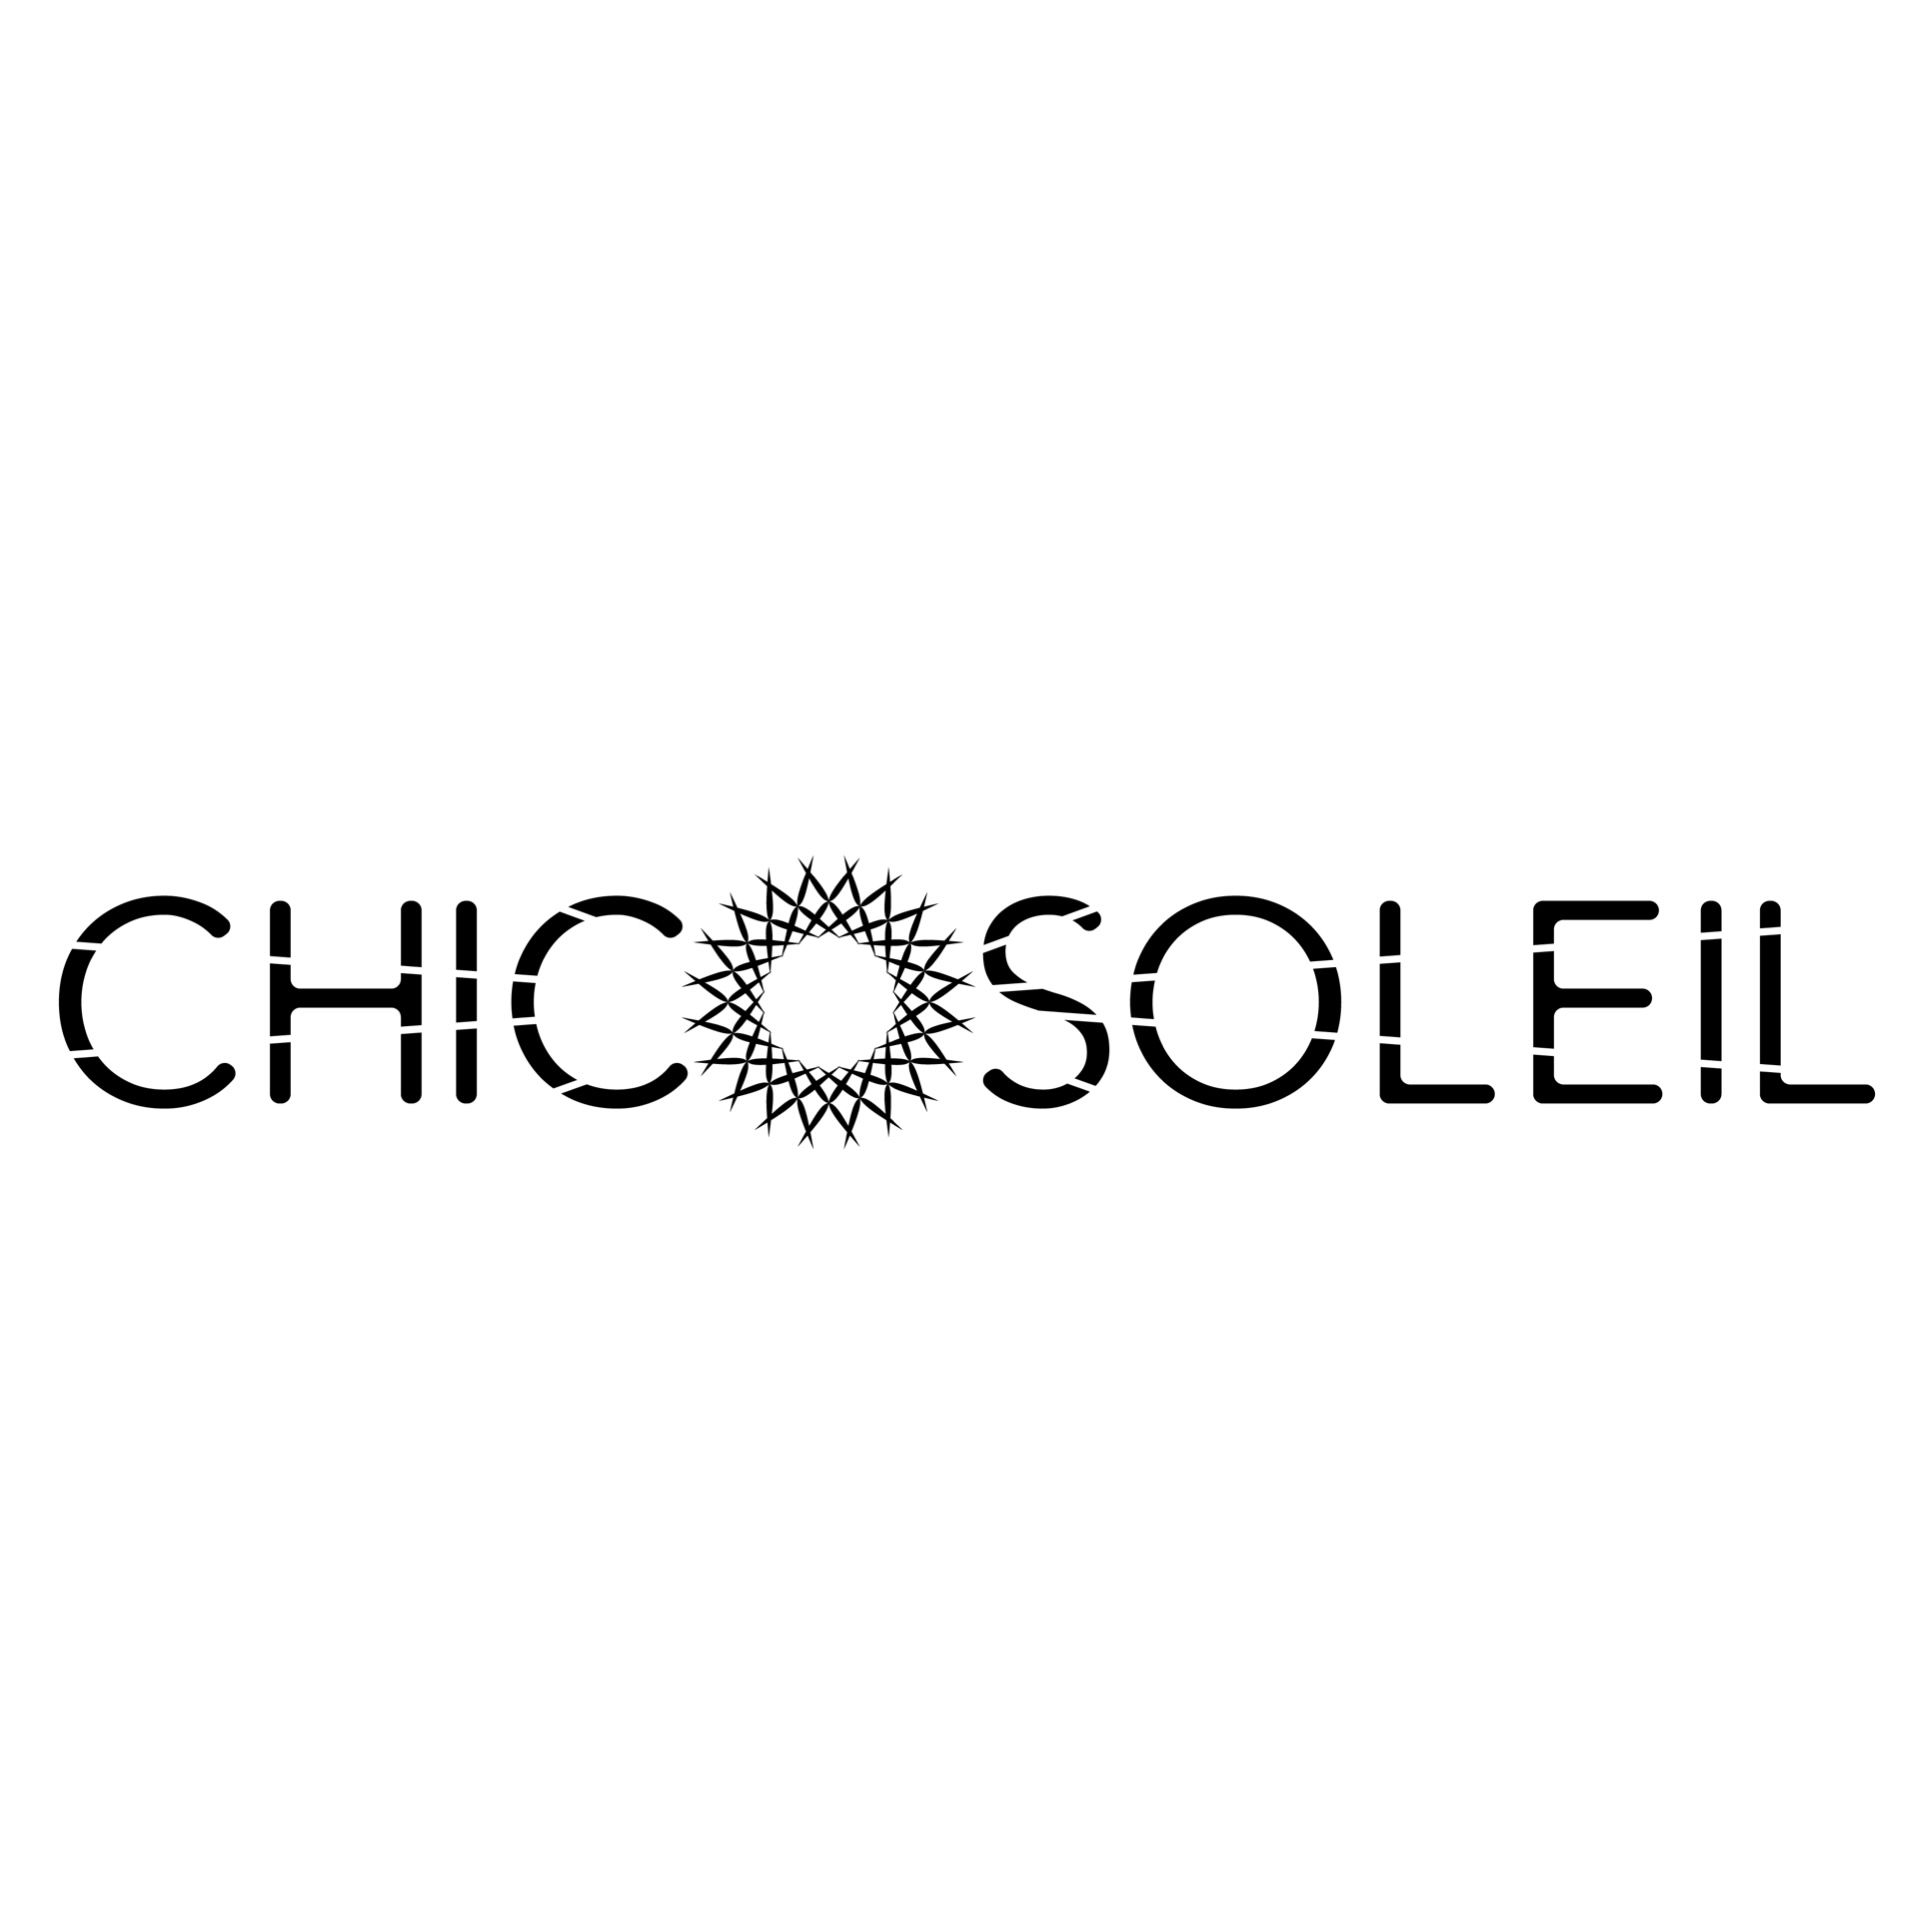 Chicosoleil